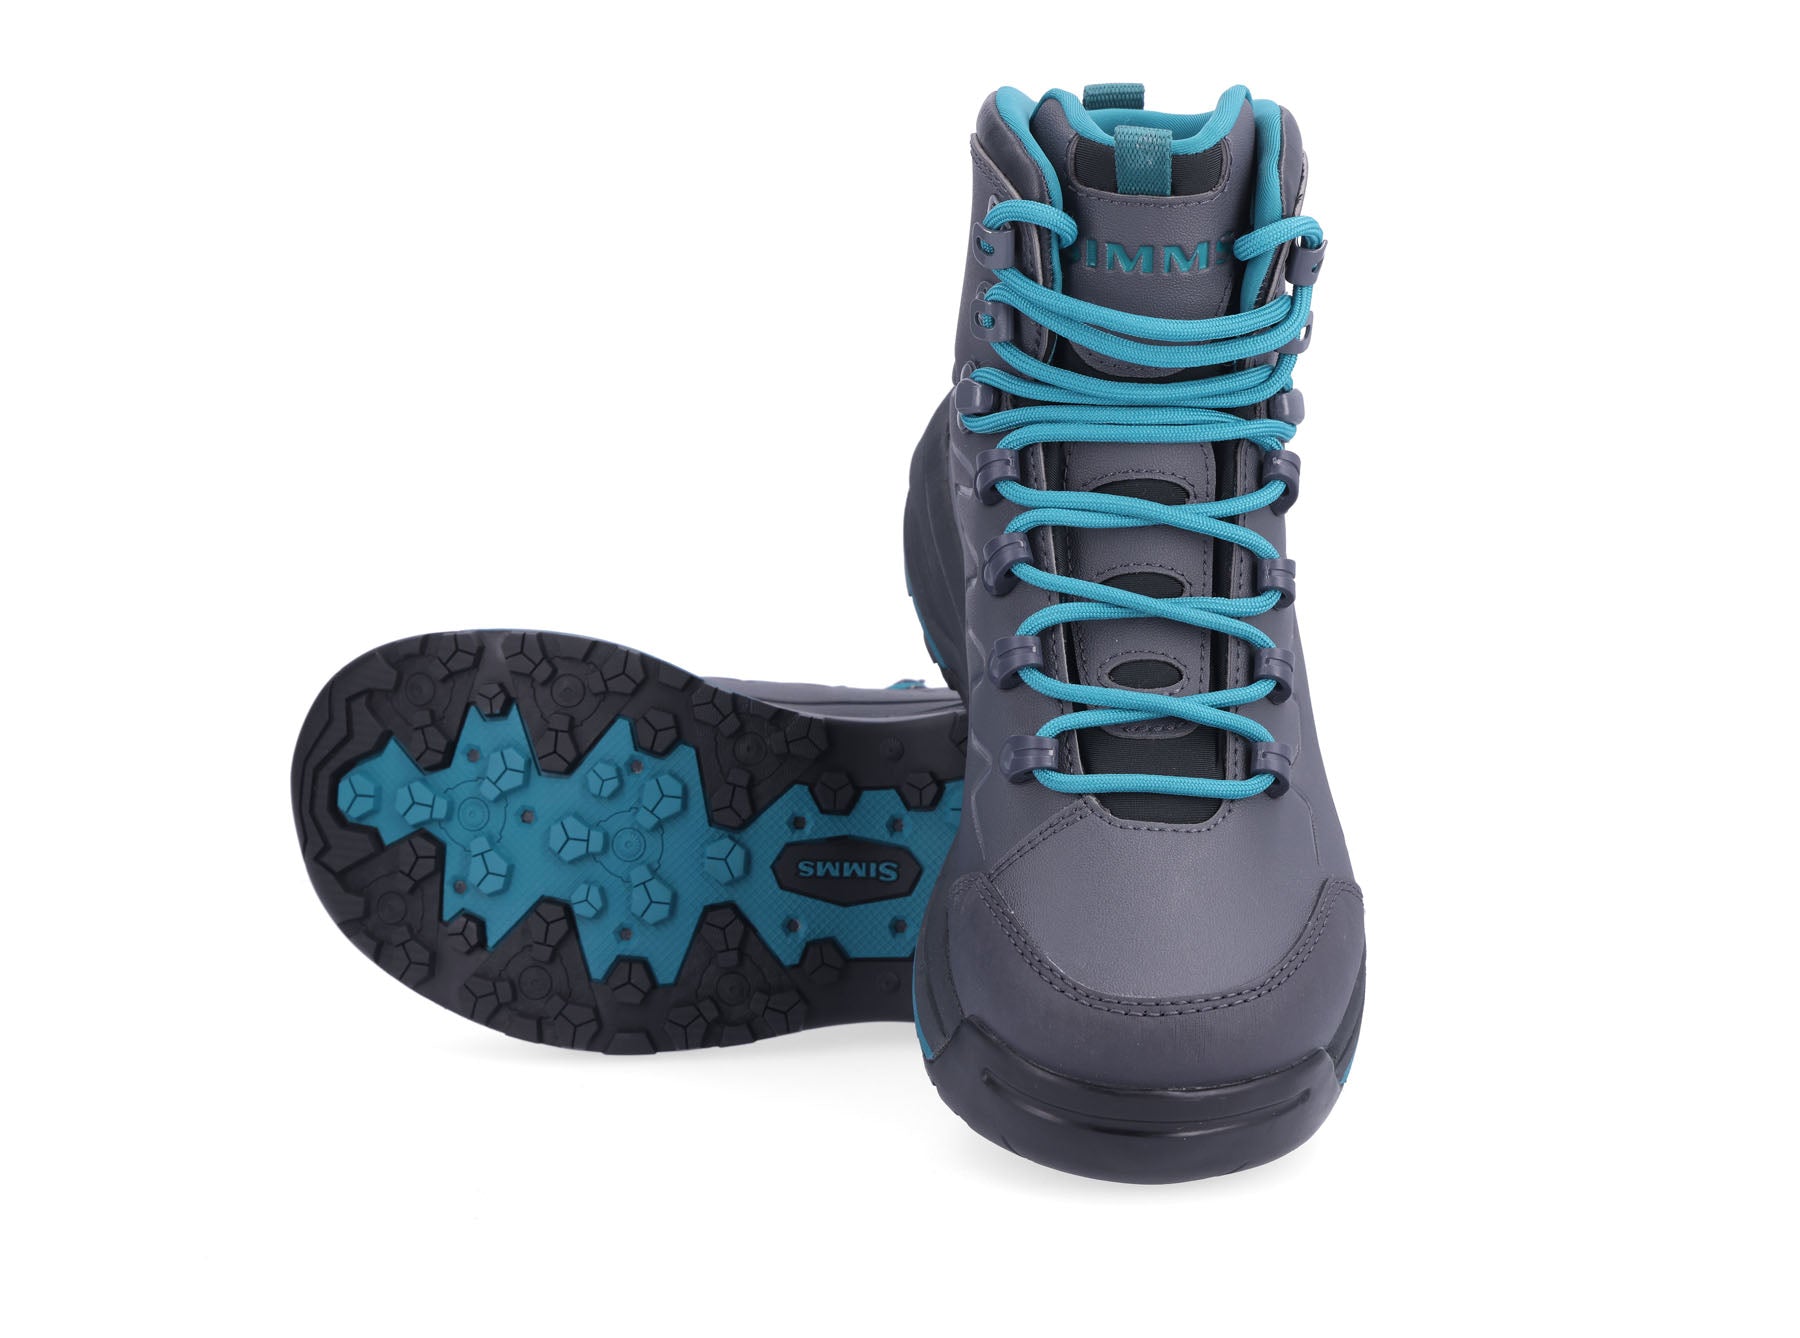 Korkers Women's Buckskin Mary Wading boots w/Felt & KlingOn rubber  soles-Size 11 